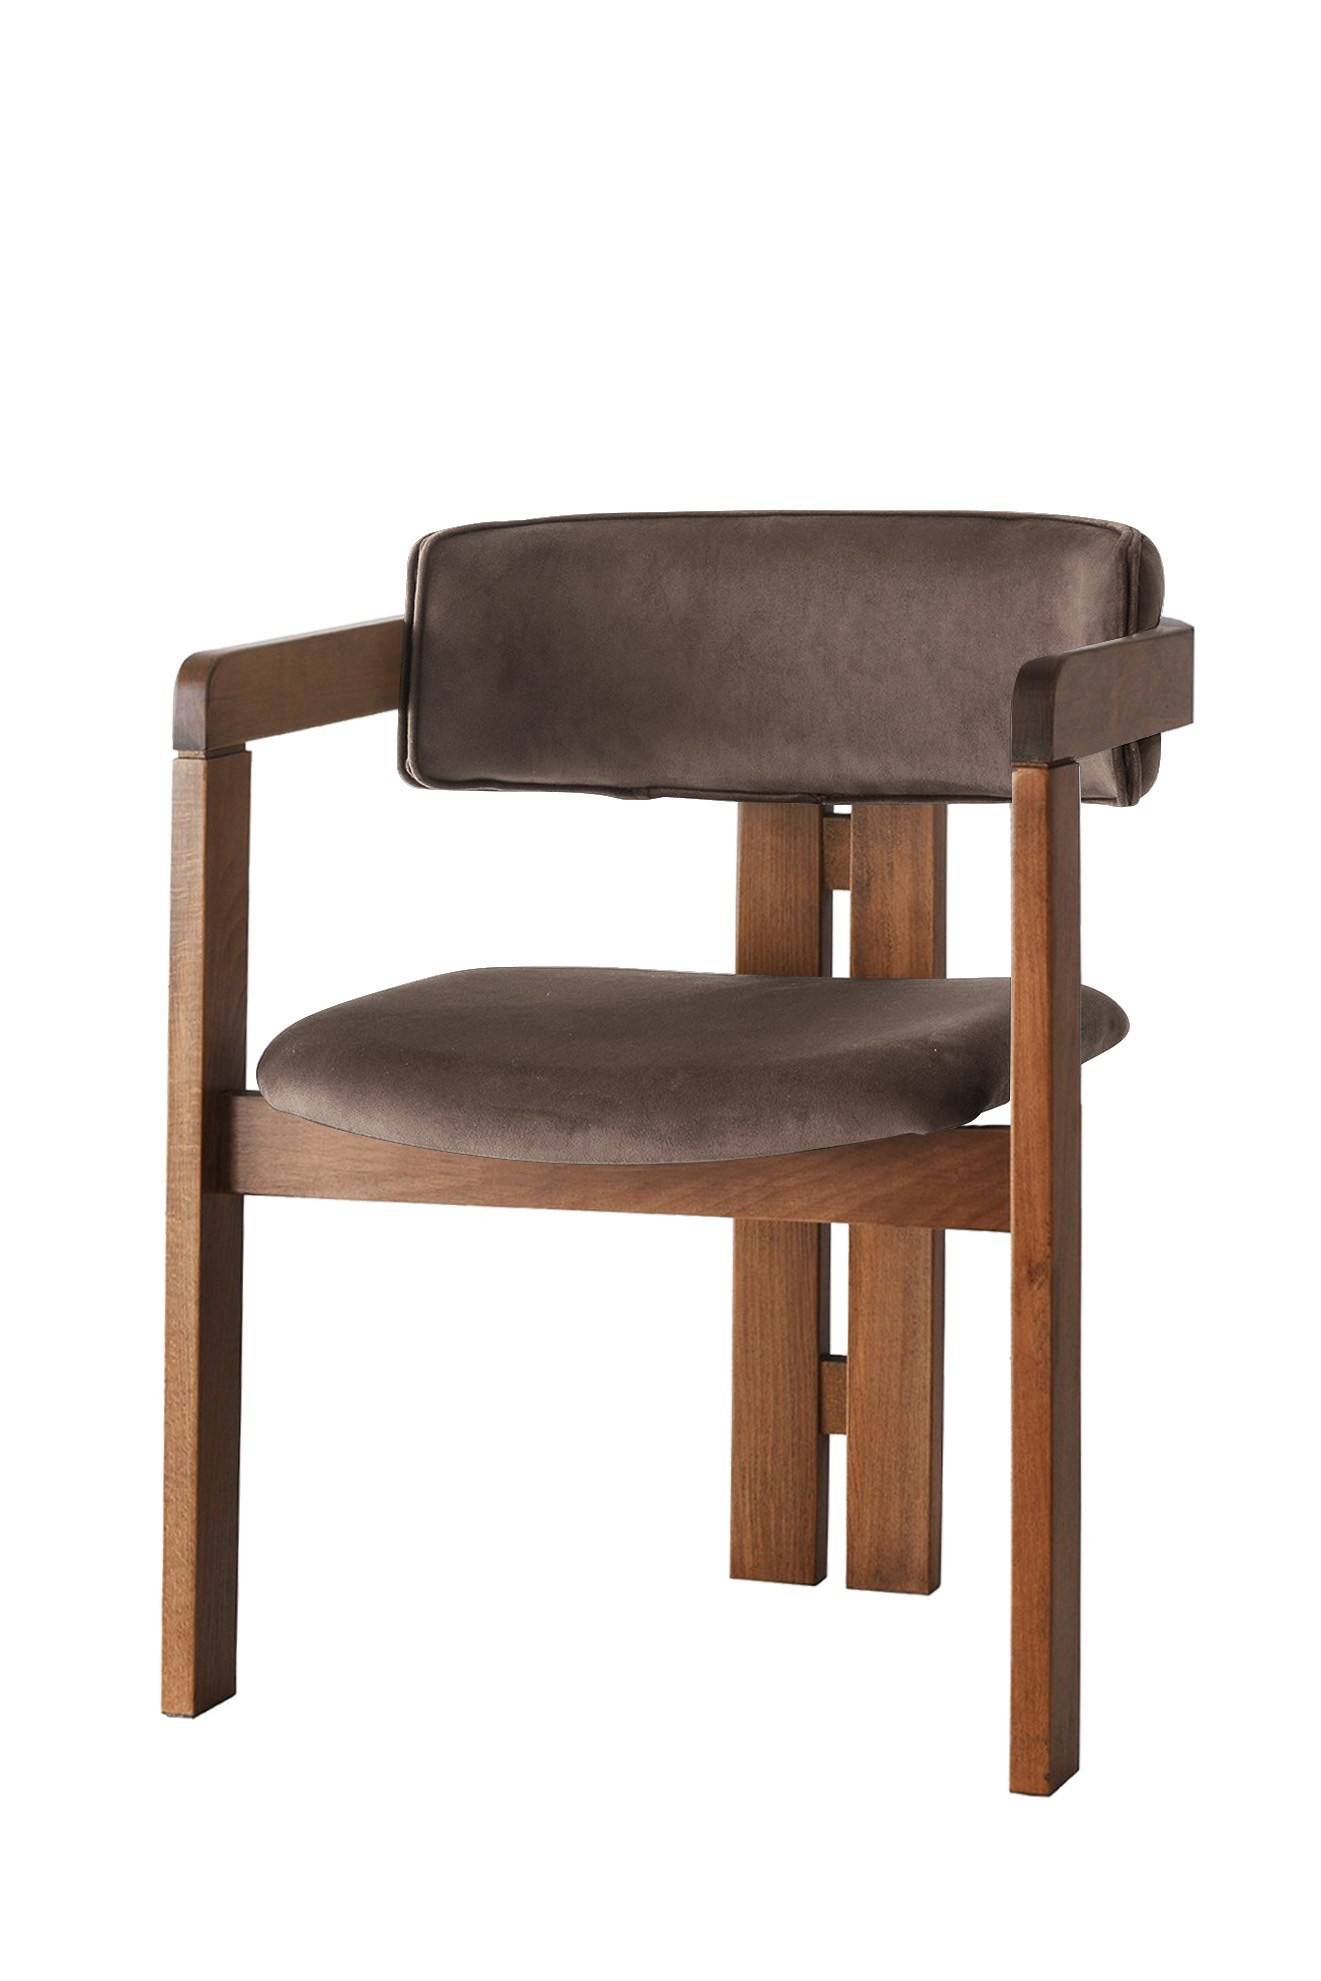 Vladmir silla moderna de estilo vintage Terciopelo marrón y madera maciza oscura